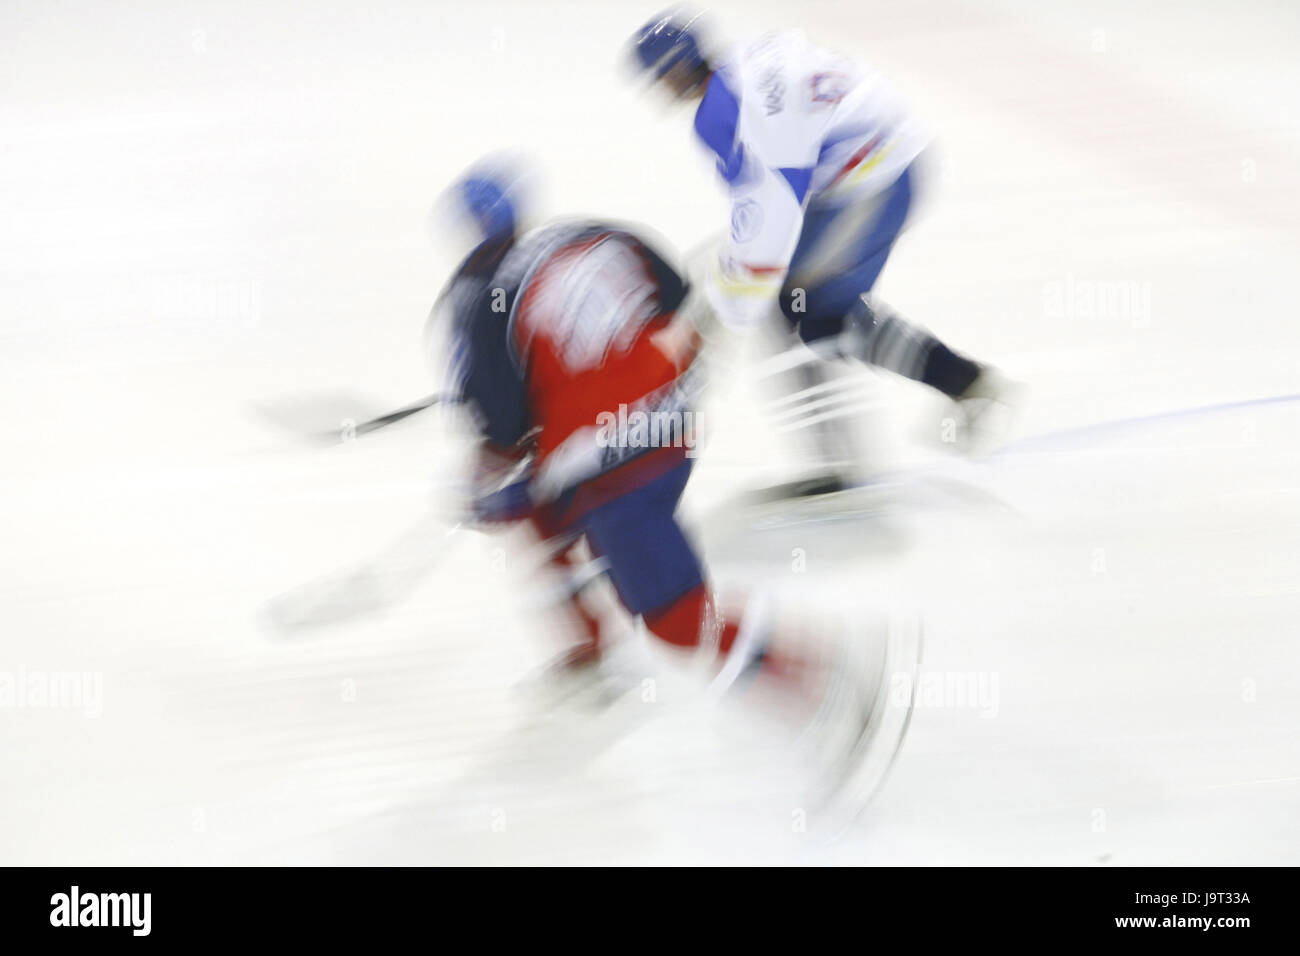 Hockey,game scene,blur, Stock Photo